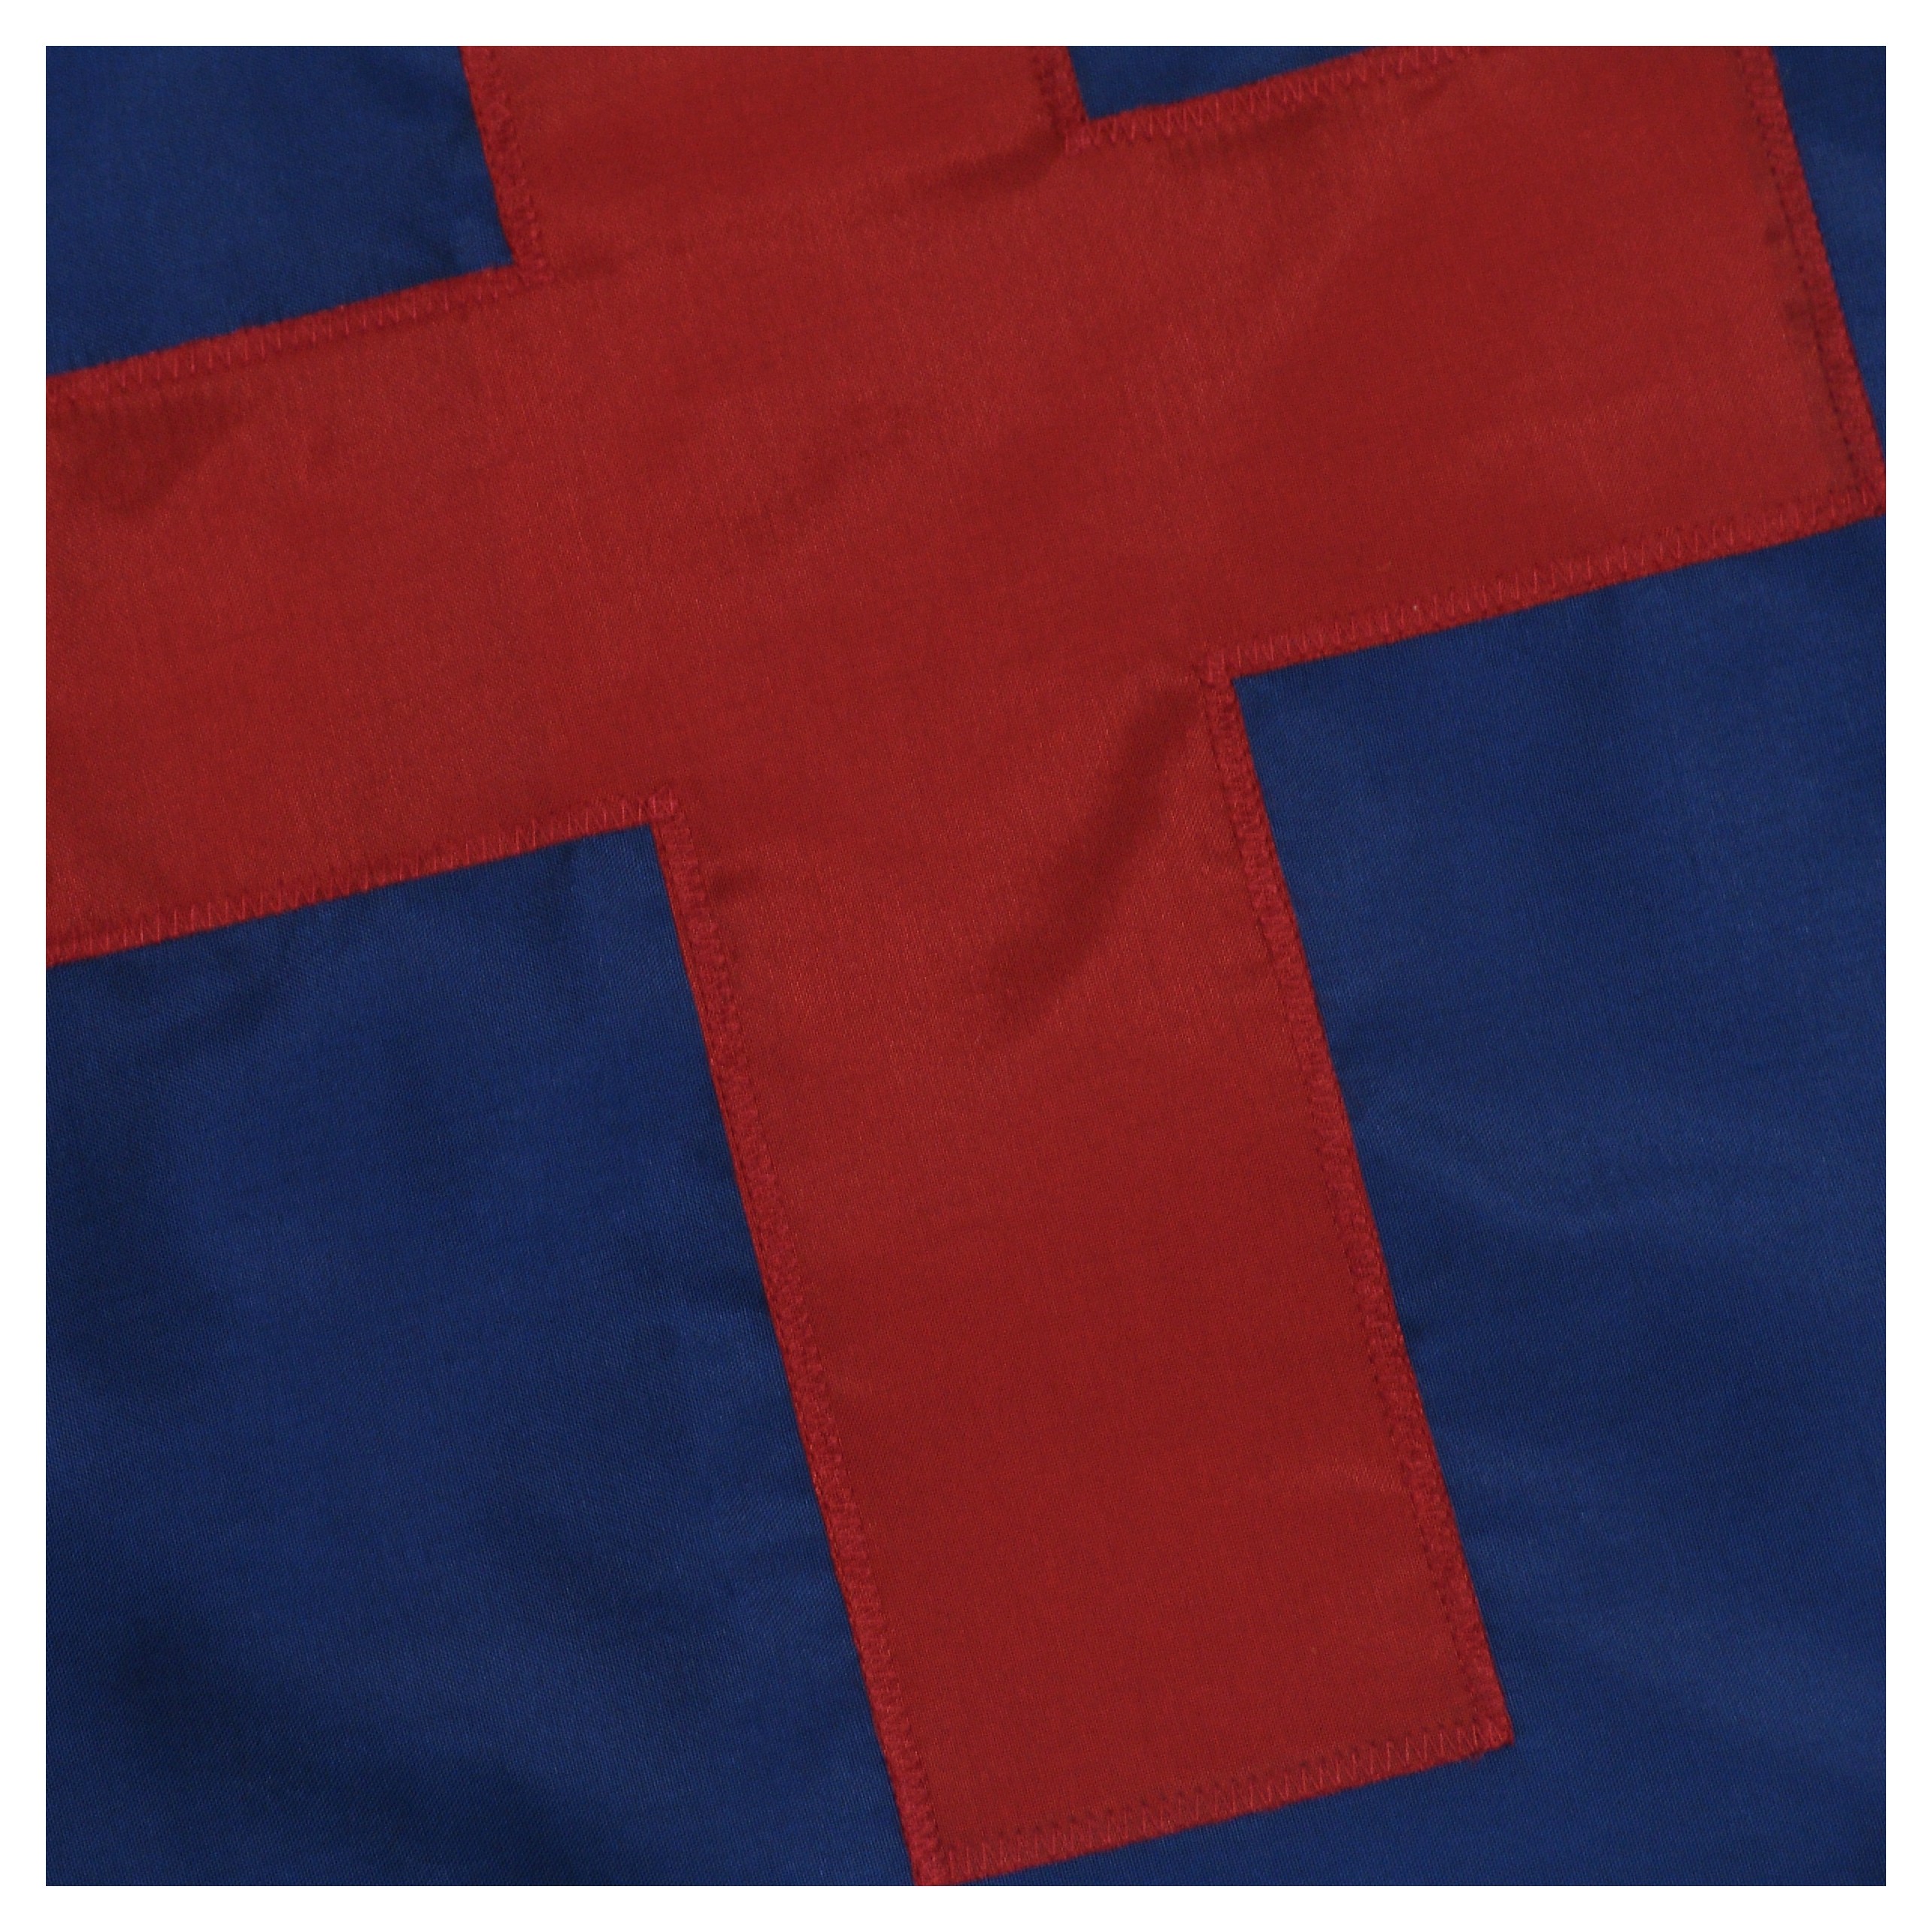 clip art christian flag - photo #11